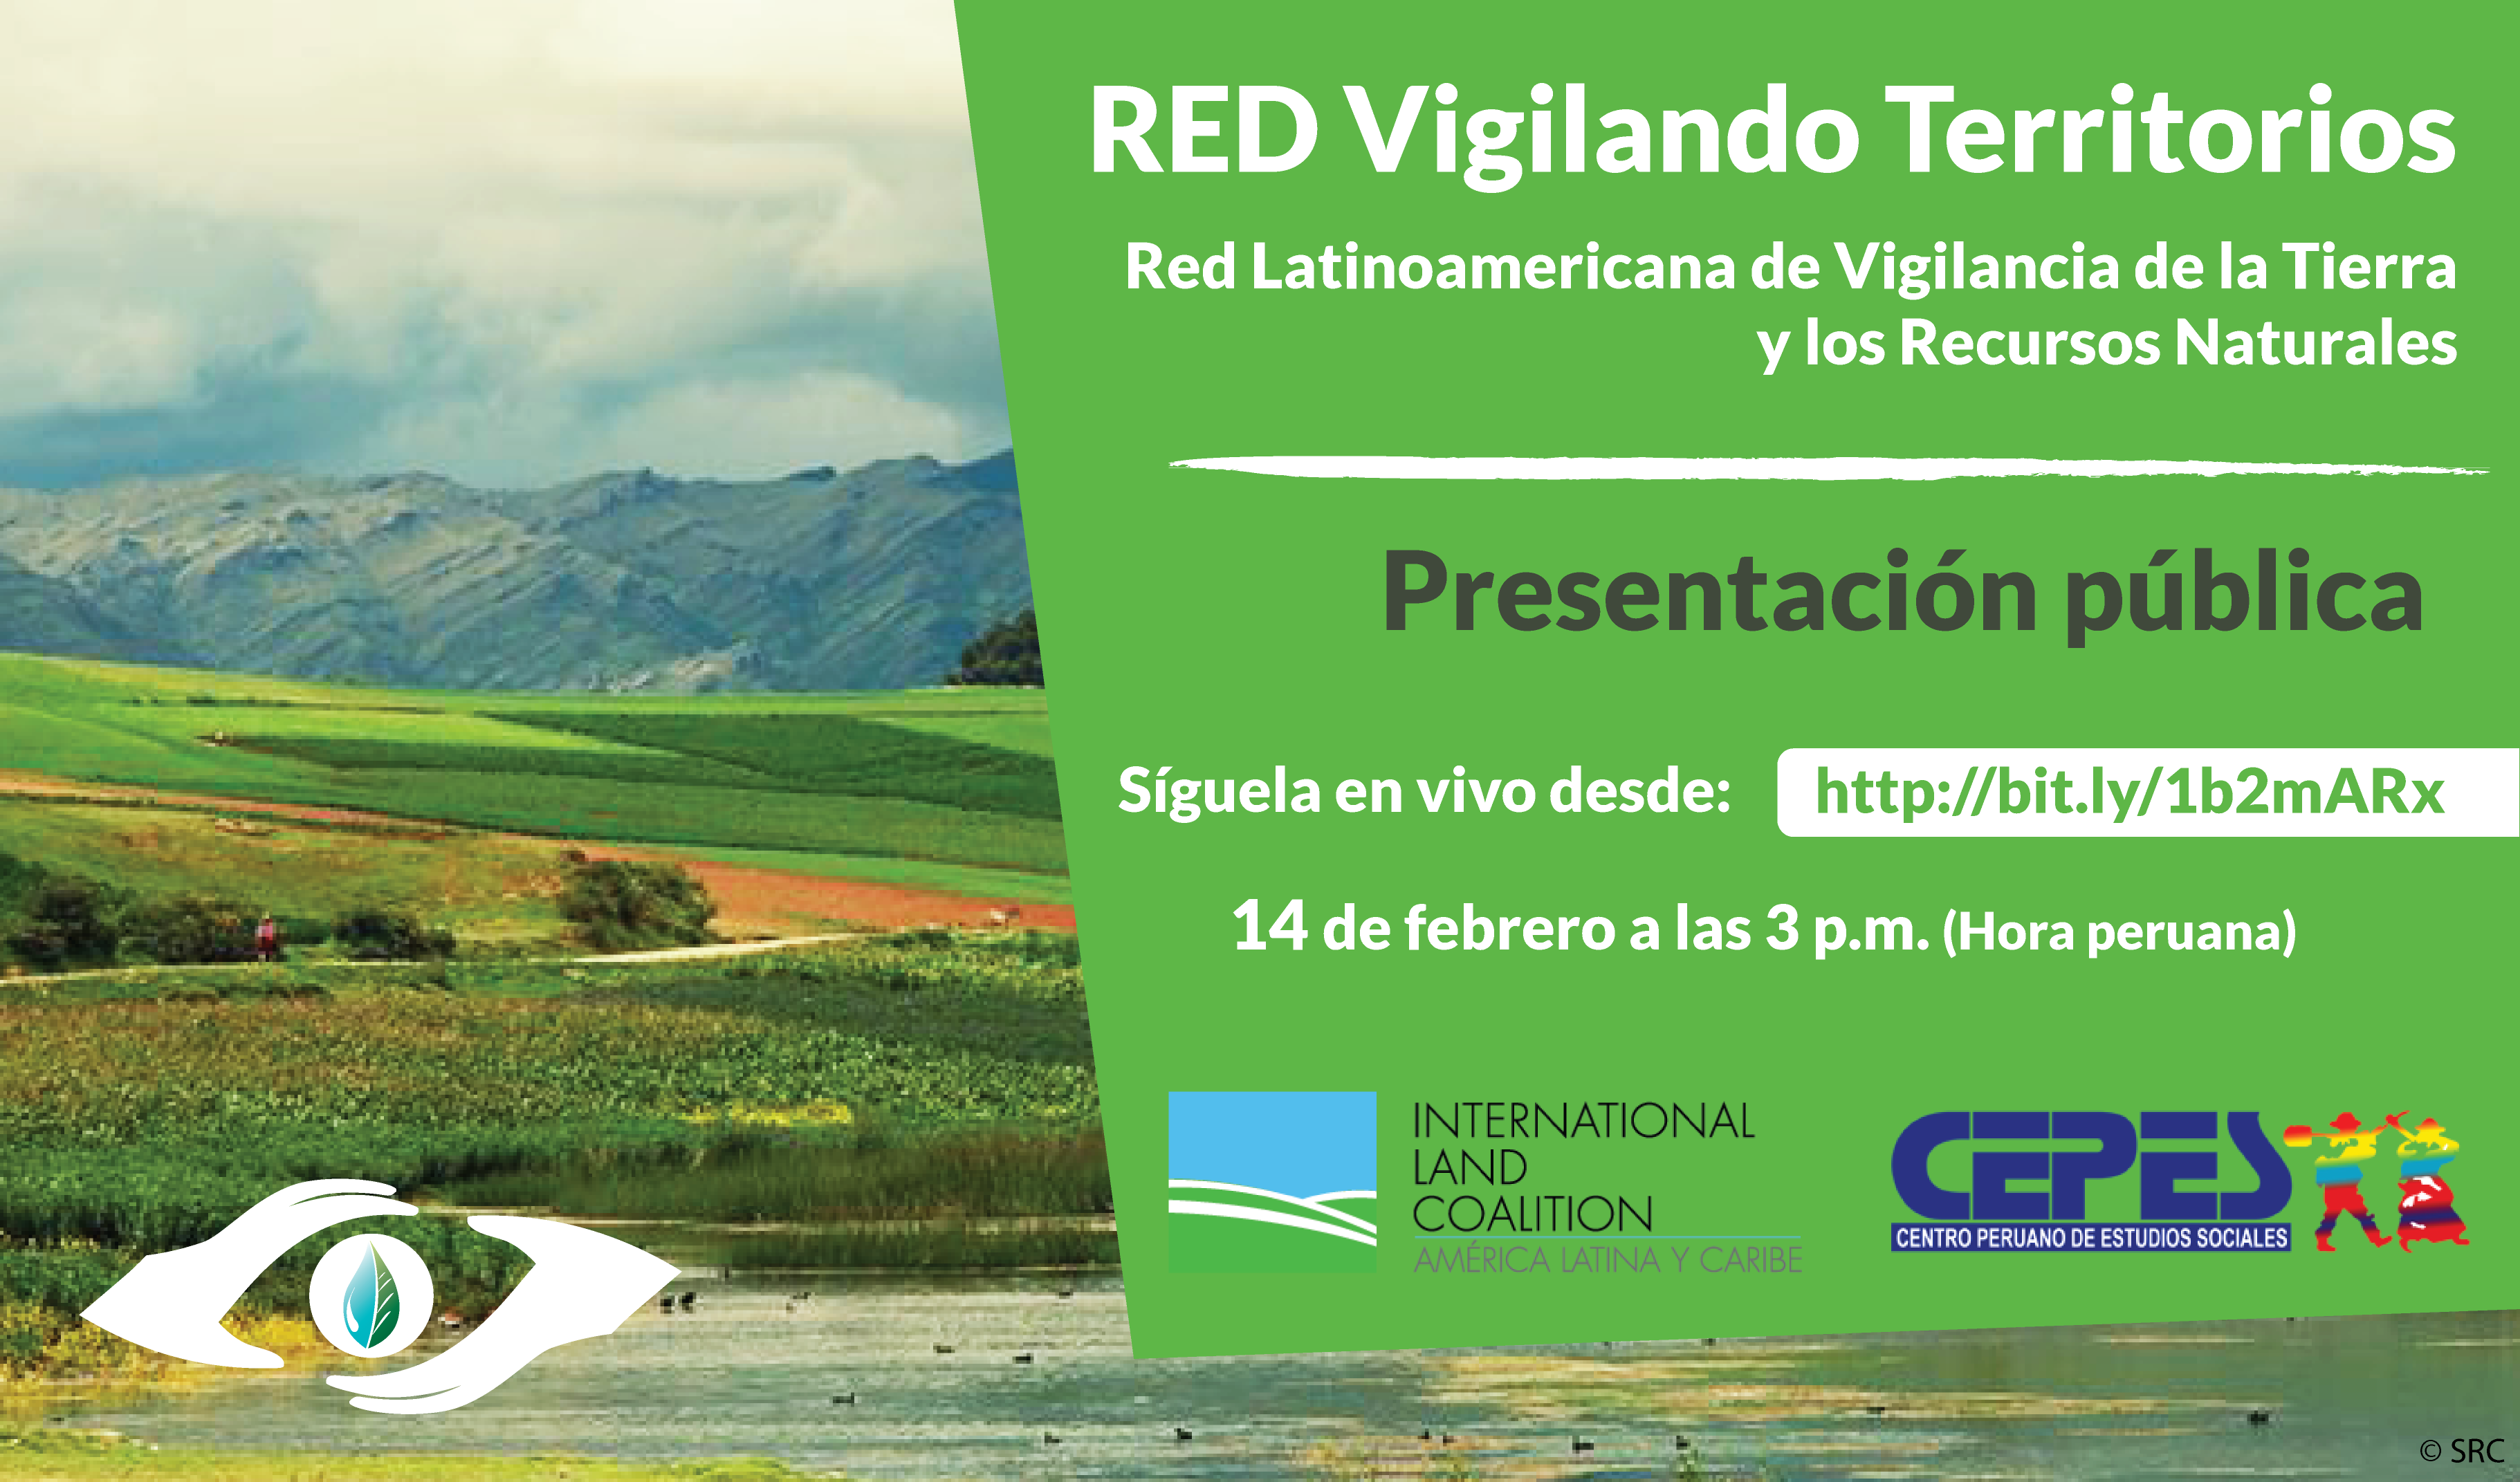 Gráfica alusiva a Presentación Pública Red Latinoamericana de Vigilancia de la Tierra y los Recursos Naturales 